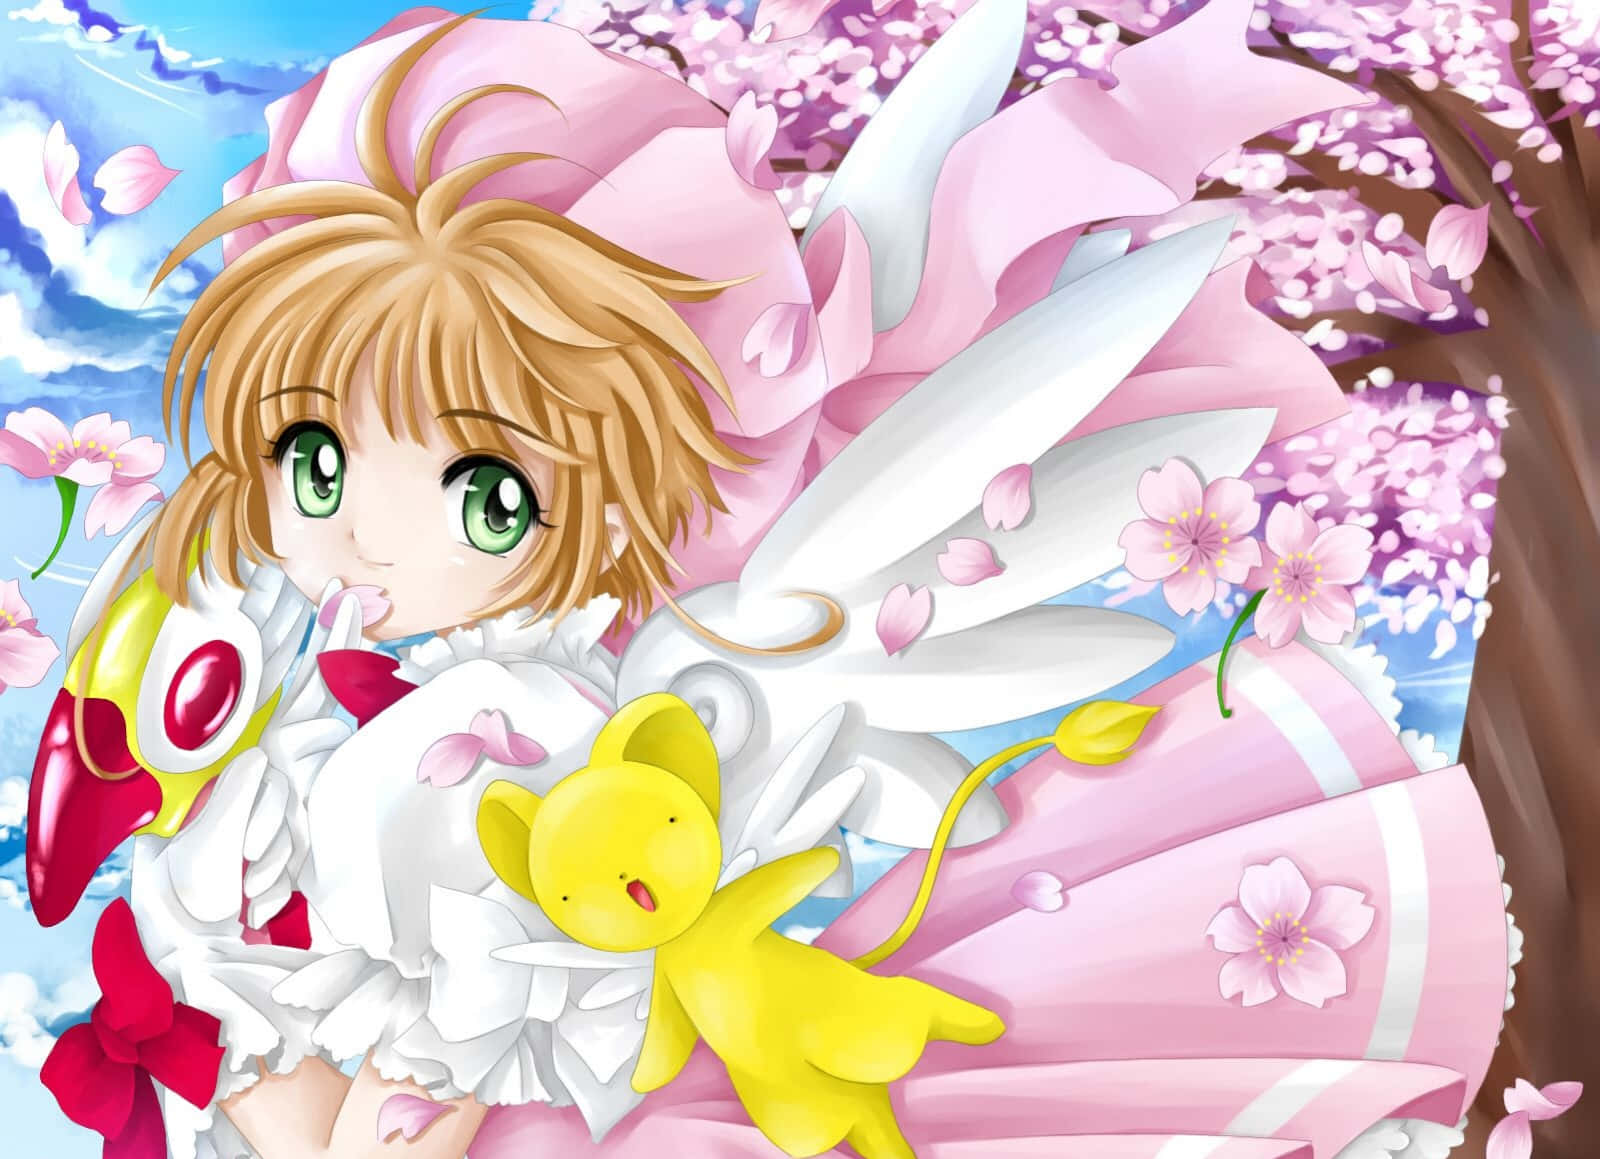 Sød Cardcaptor Sakura Anime karakter Wallpaper Wallpaper